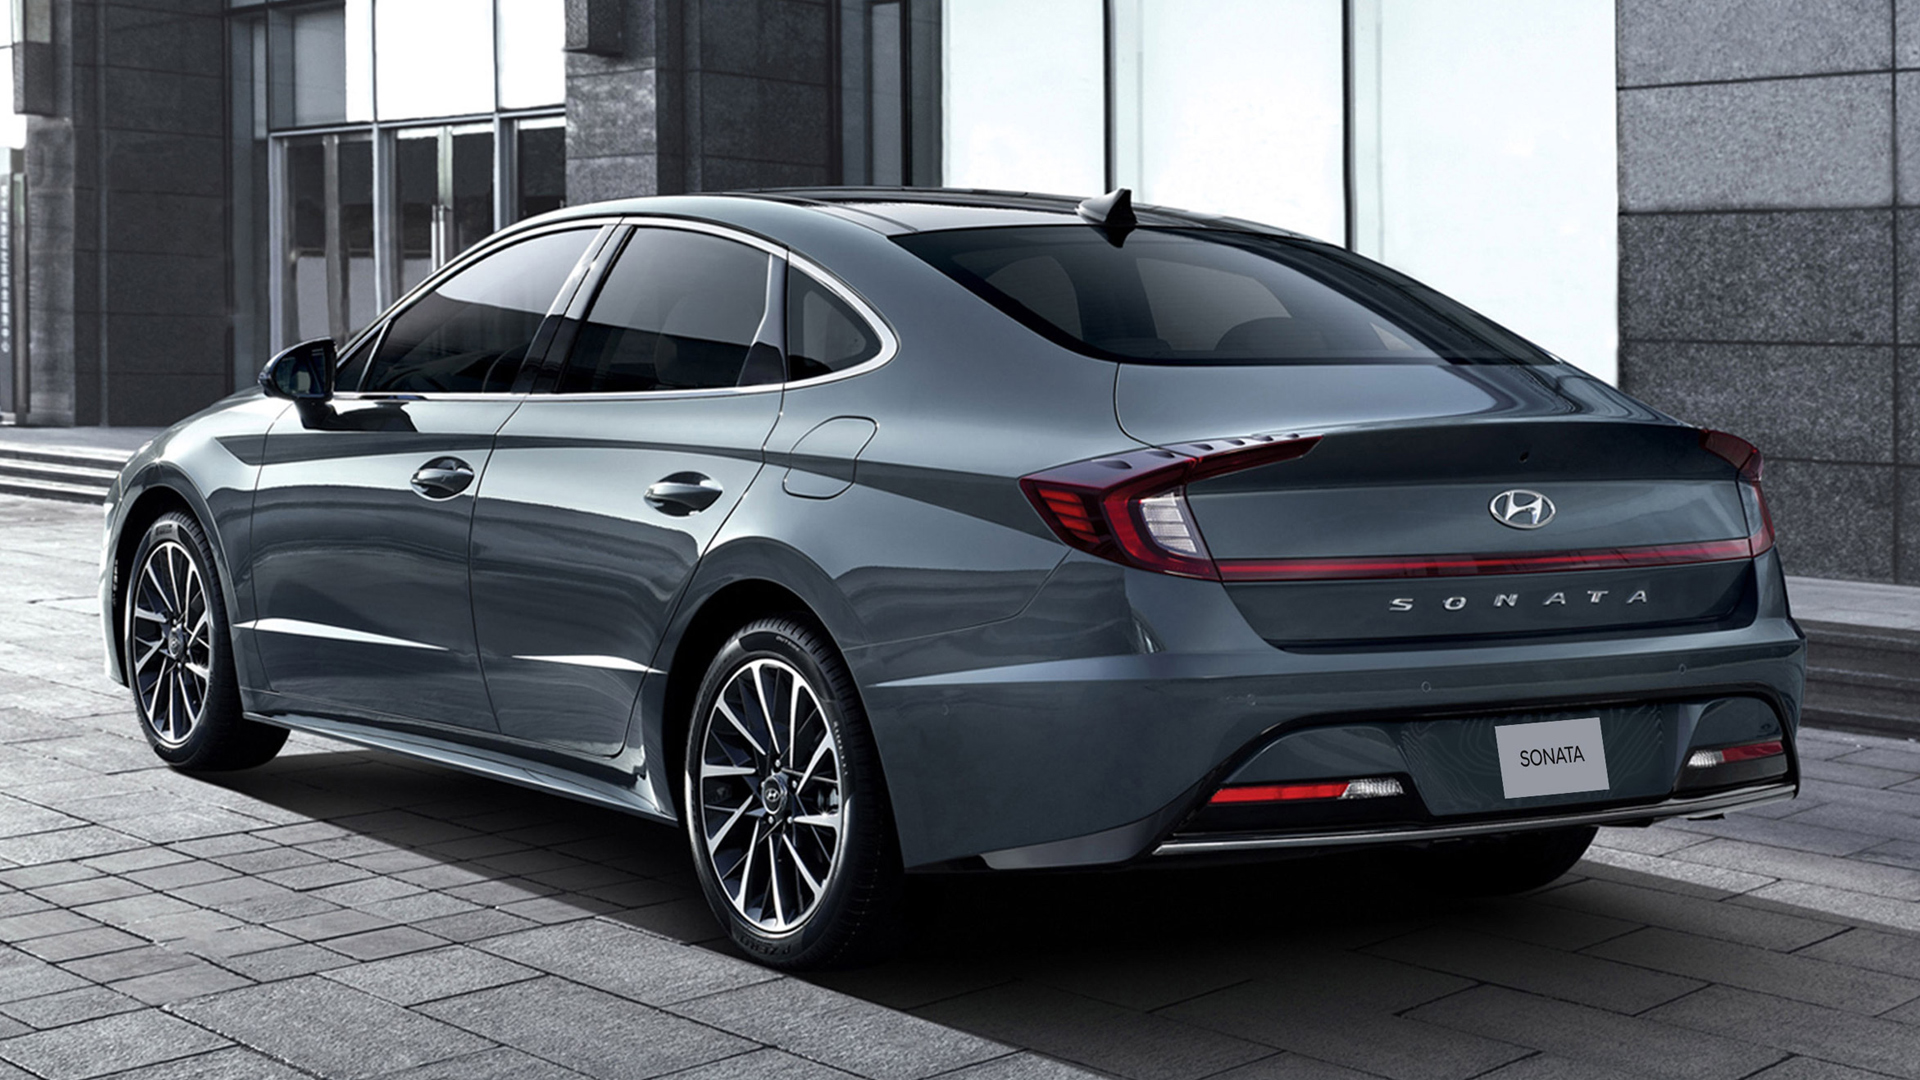 Hyundai Sonata Una experiencia inteligente, elegante y personalizada.